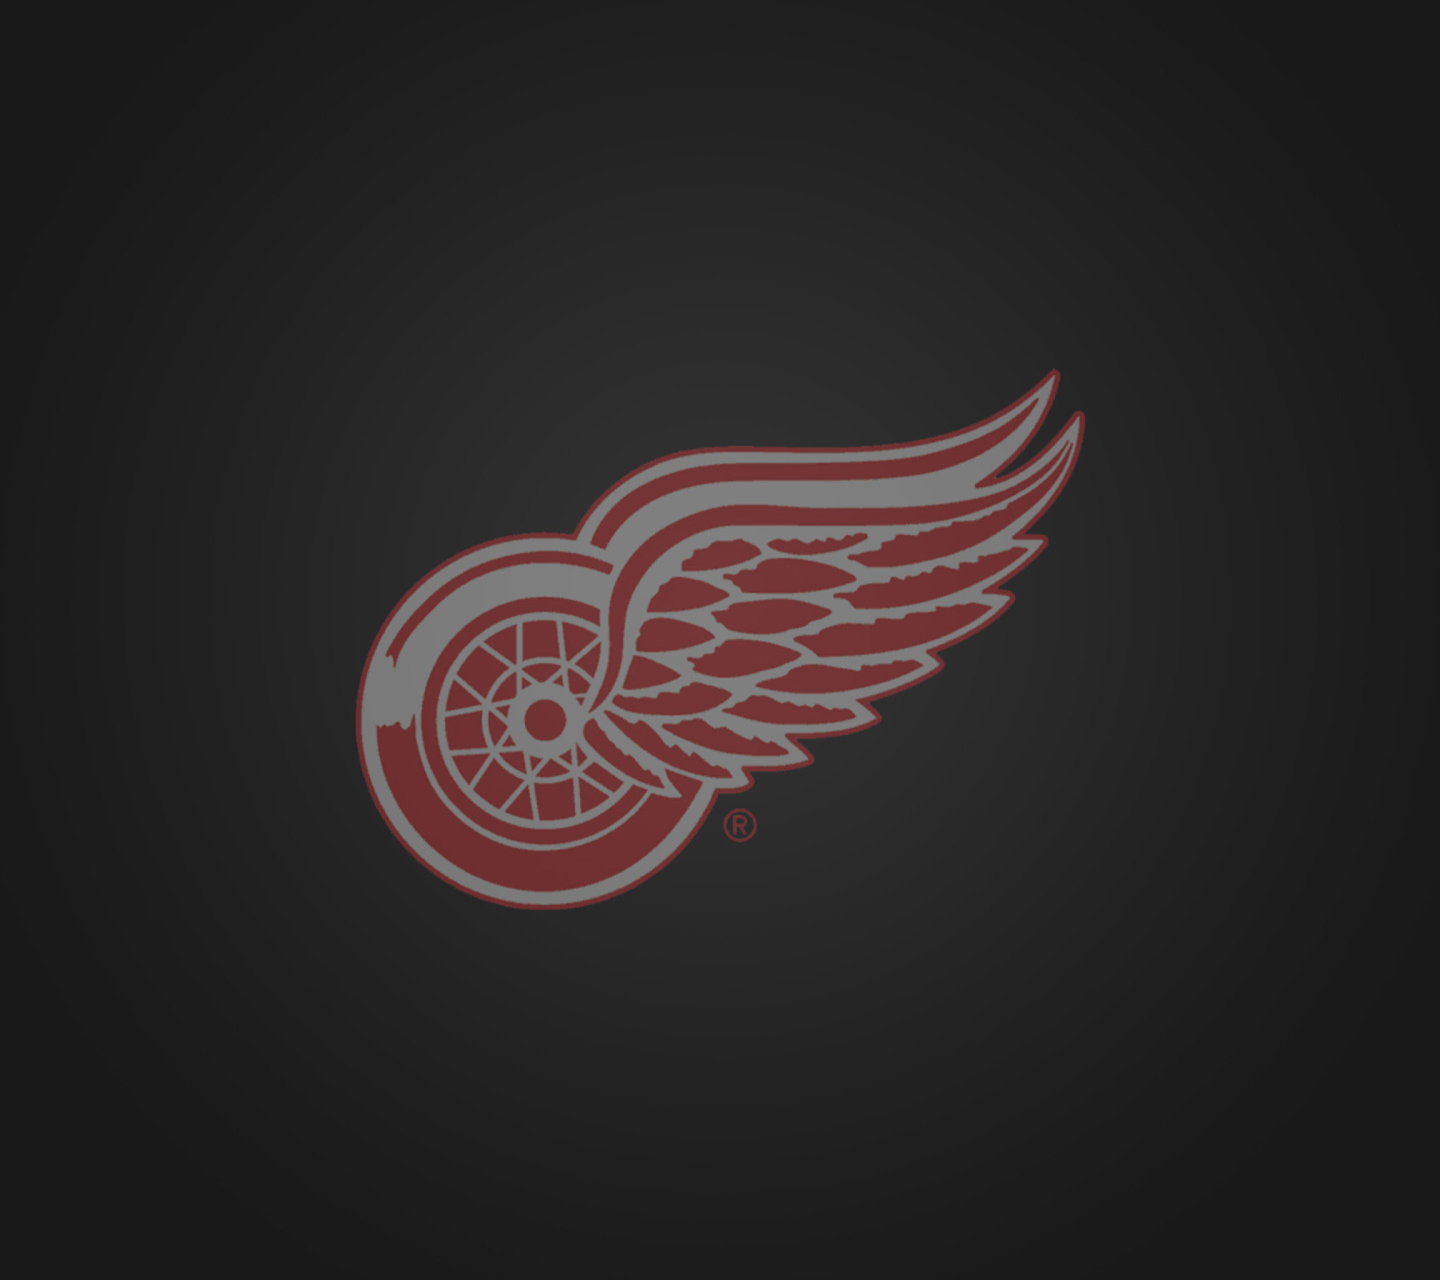 Detroit Red Wings screenshot #1 1440x1280